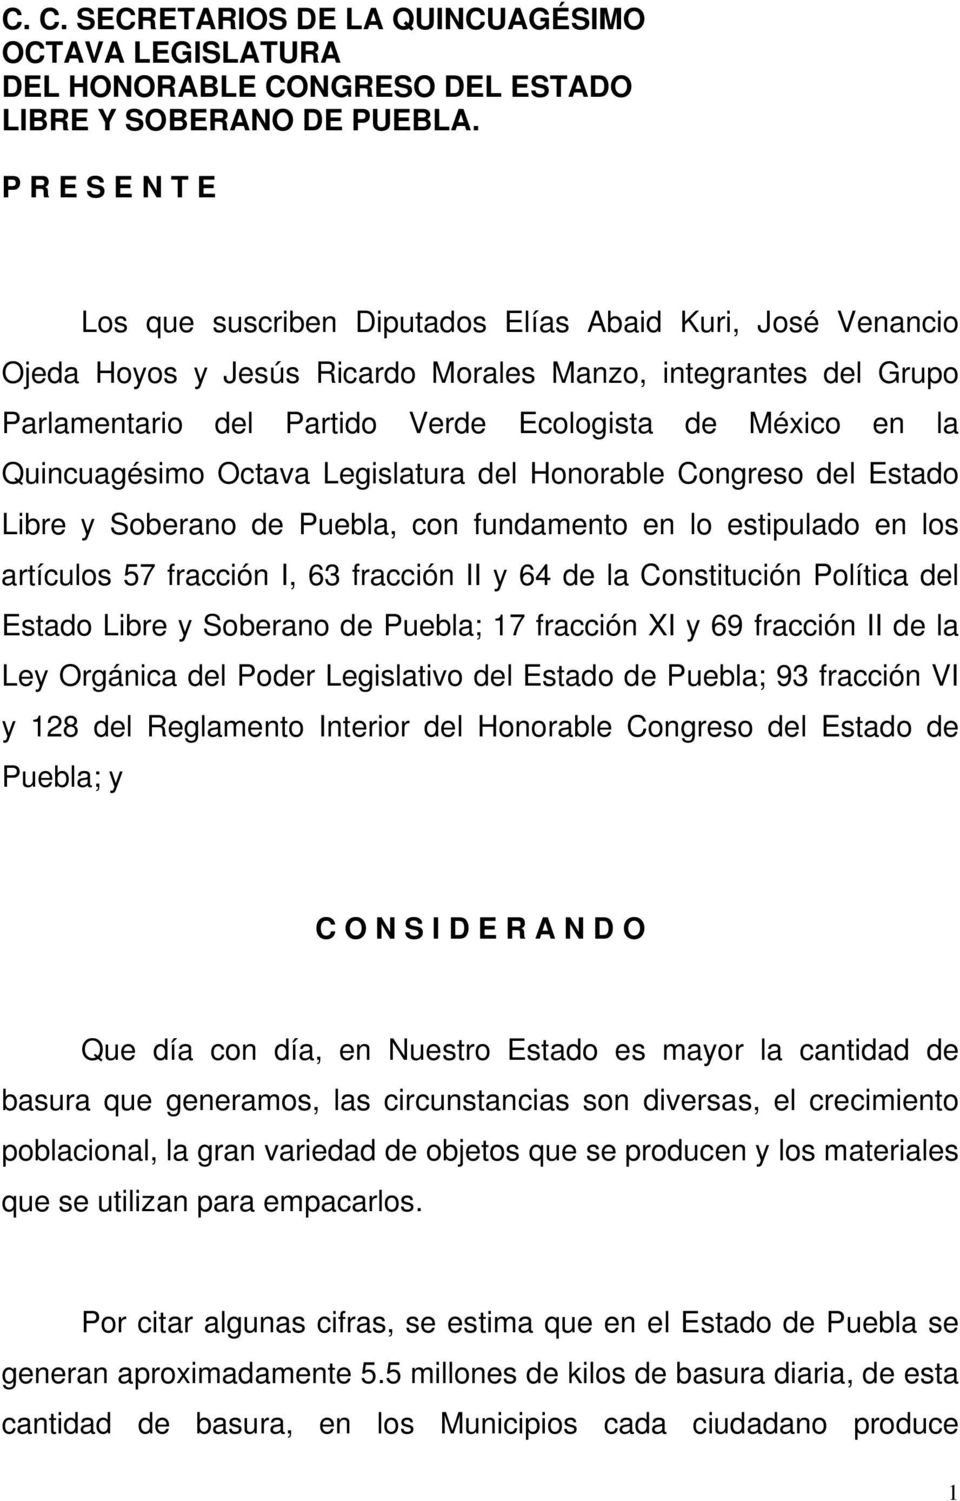 Quincuagésimo Octava Legislatura del Honorable Congreso del Estado Libre y Soberano de Puebla, con fundamento en lo estipulado en los artículos 57 fracción I, 63 fracción II y 64 de la Constitución